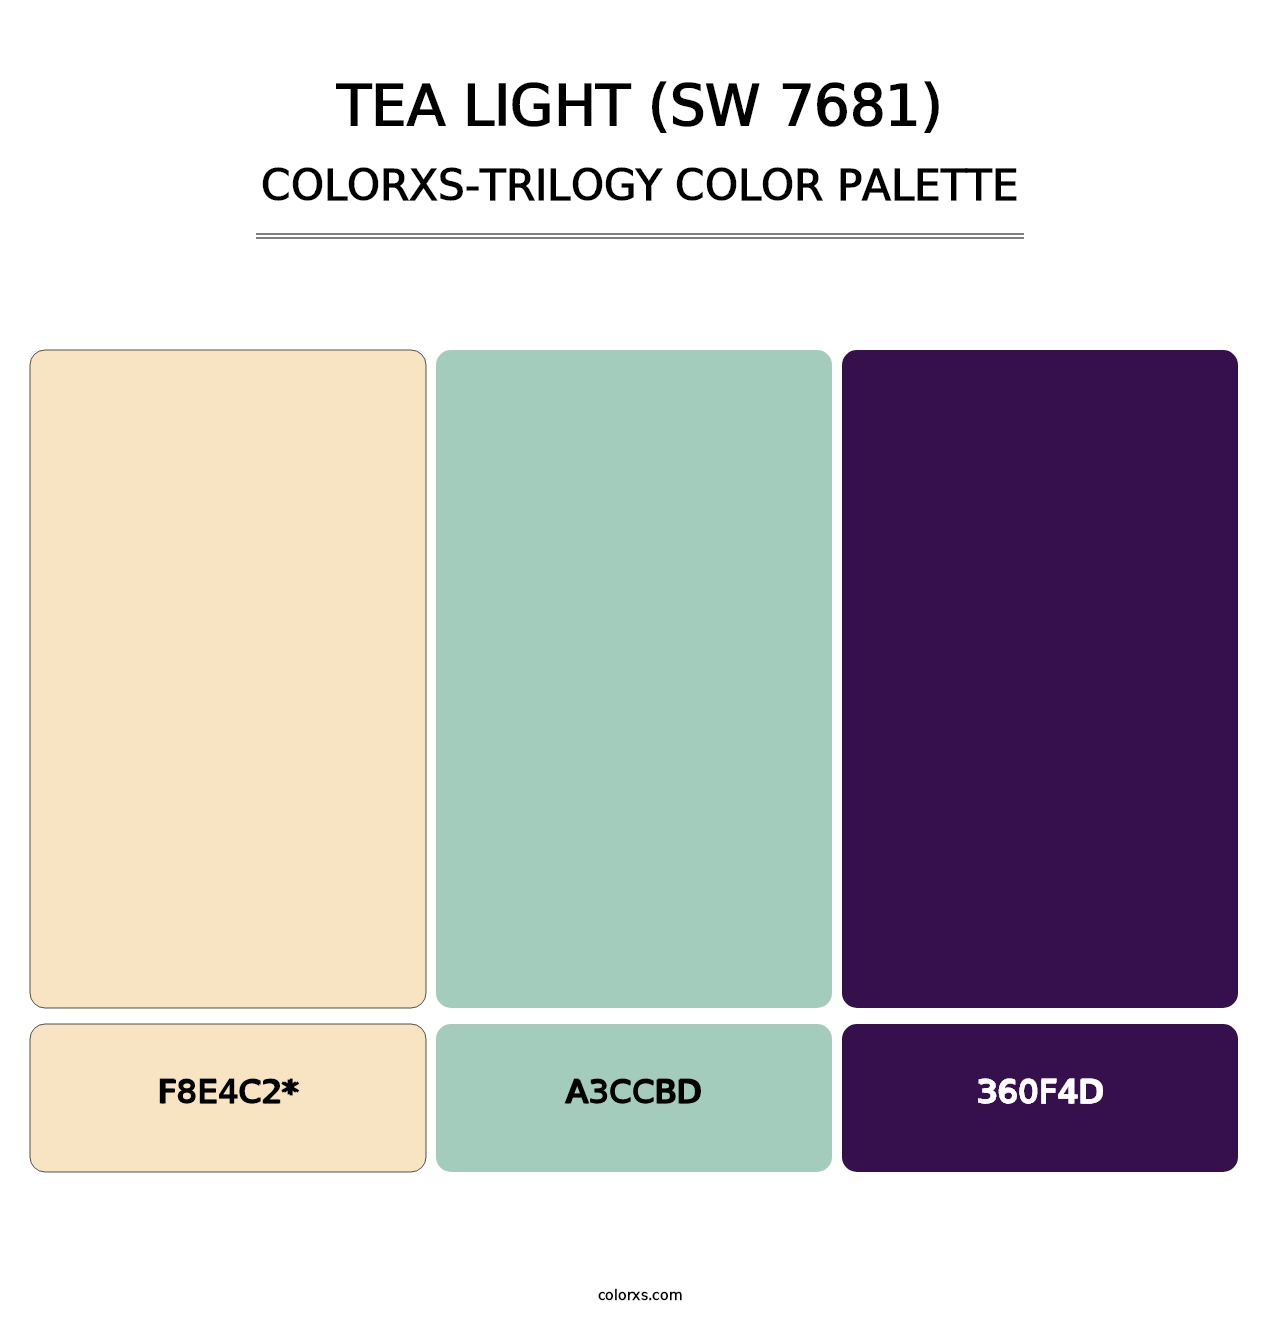 Tea Light (SW 7681) - Colorxs Trilogy Palette